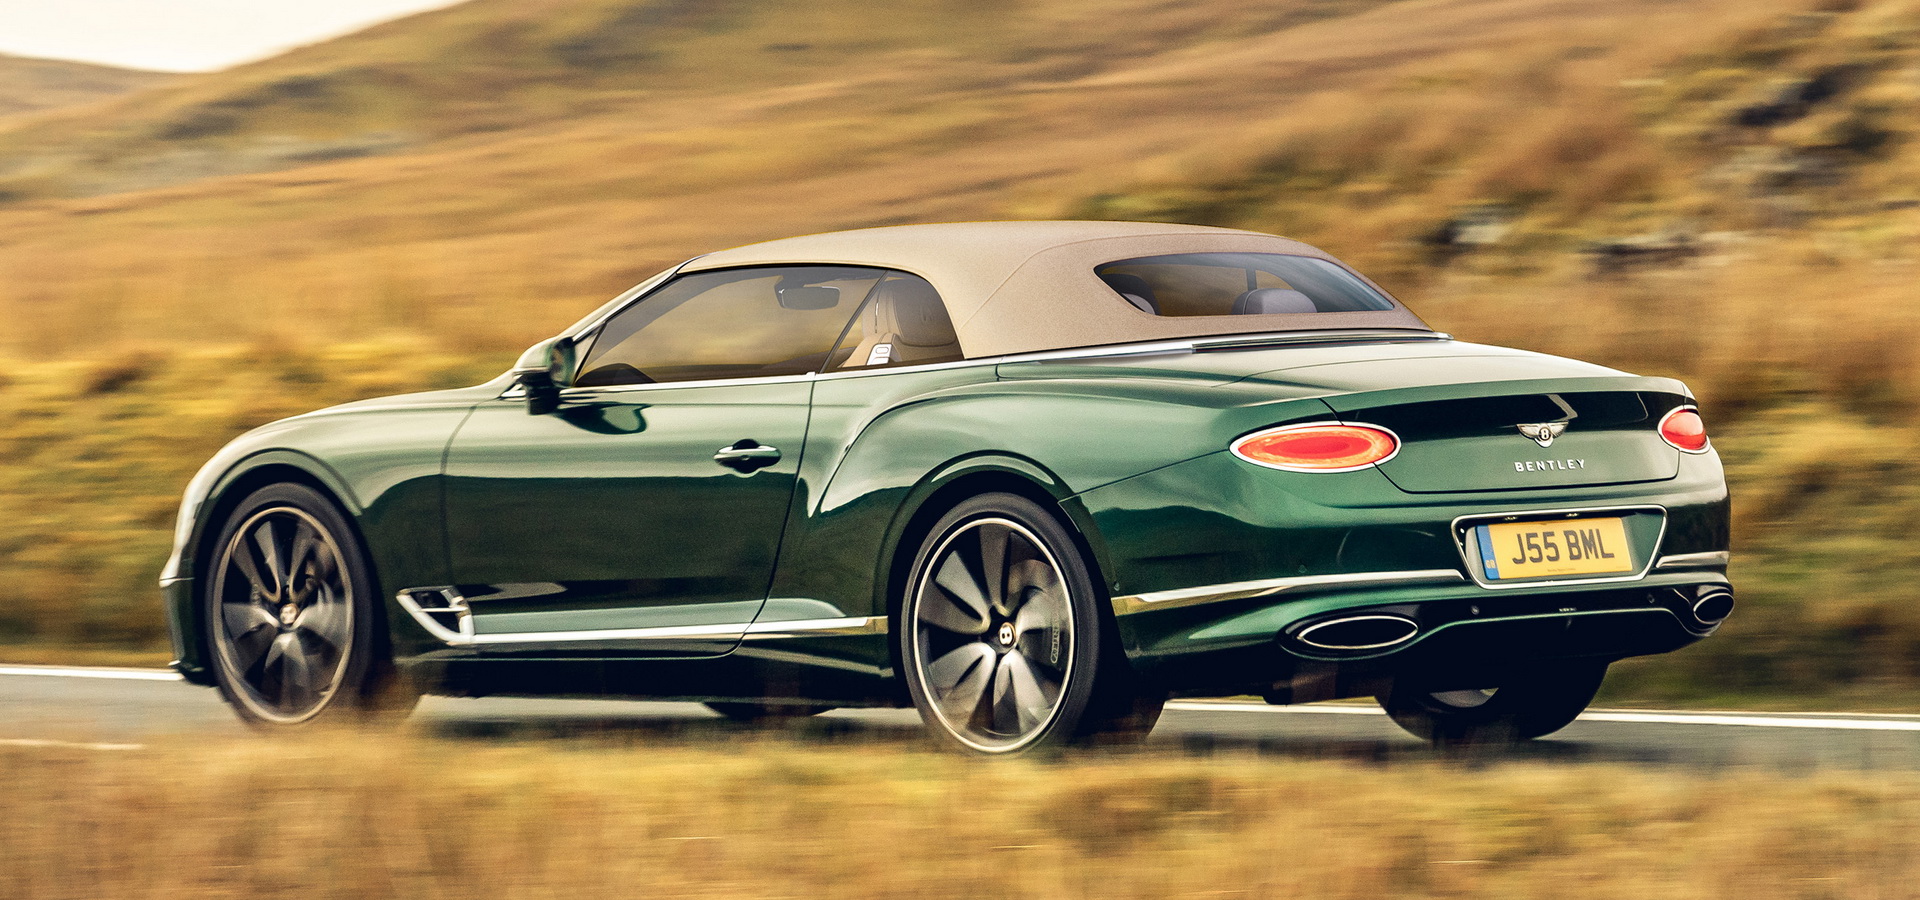 2017 - [Bentley] Continental GT - Page 7 Bentley-gtc-tweed-roof-5